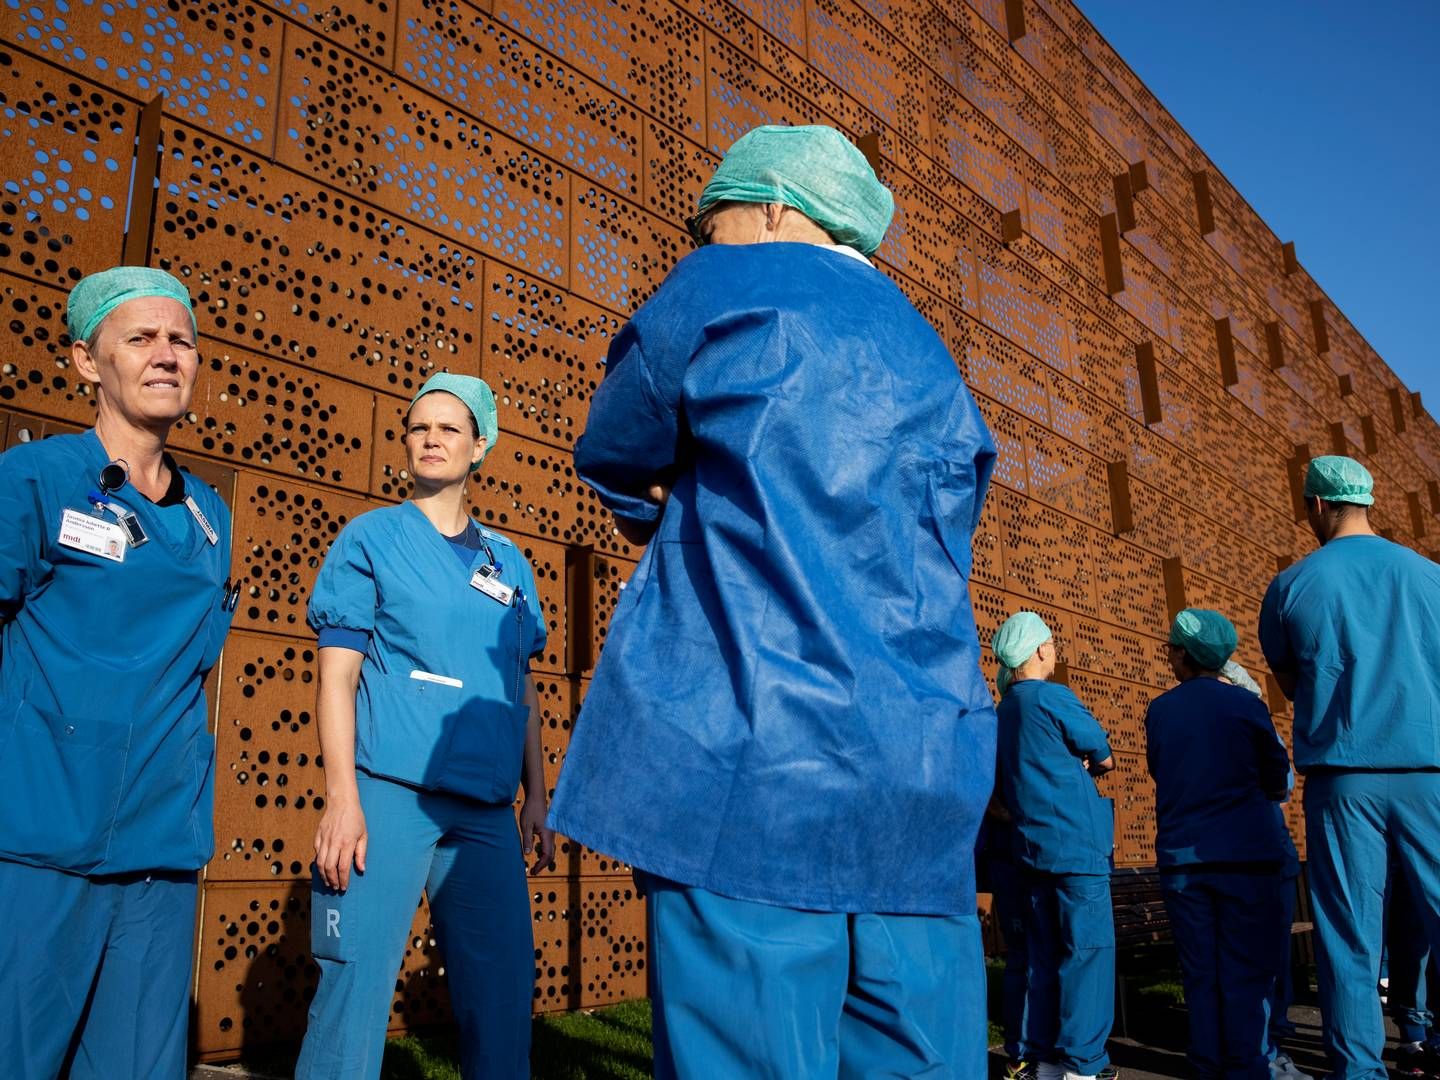 Ligesom tidligere i Danmark, her ved en arbejdsnedlæggelse på Skejby Sygehus, vil sygeplejersker i Storbritannien også strejke. Foto: Casper Dalhoff/Ritzau Scanpix